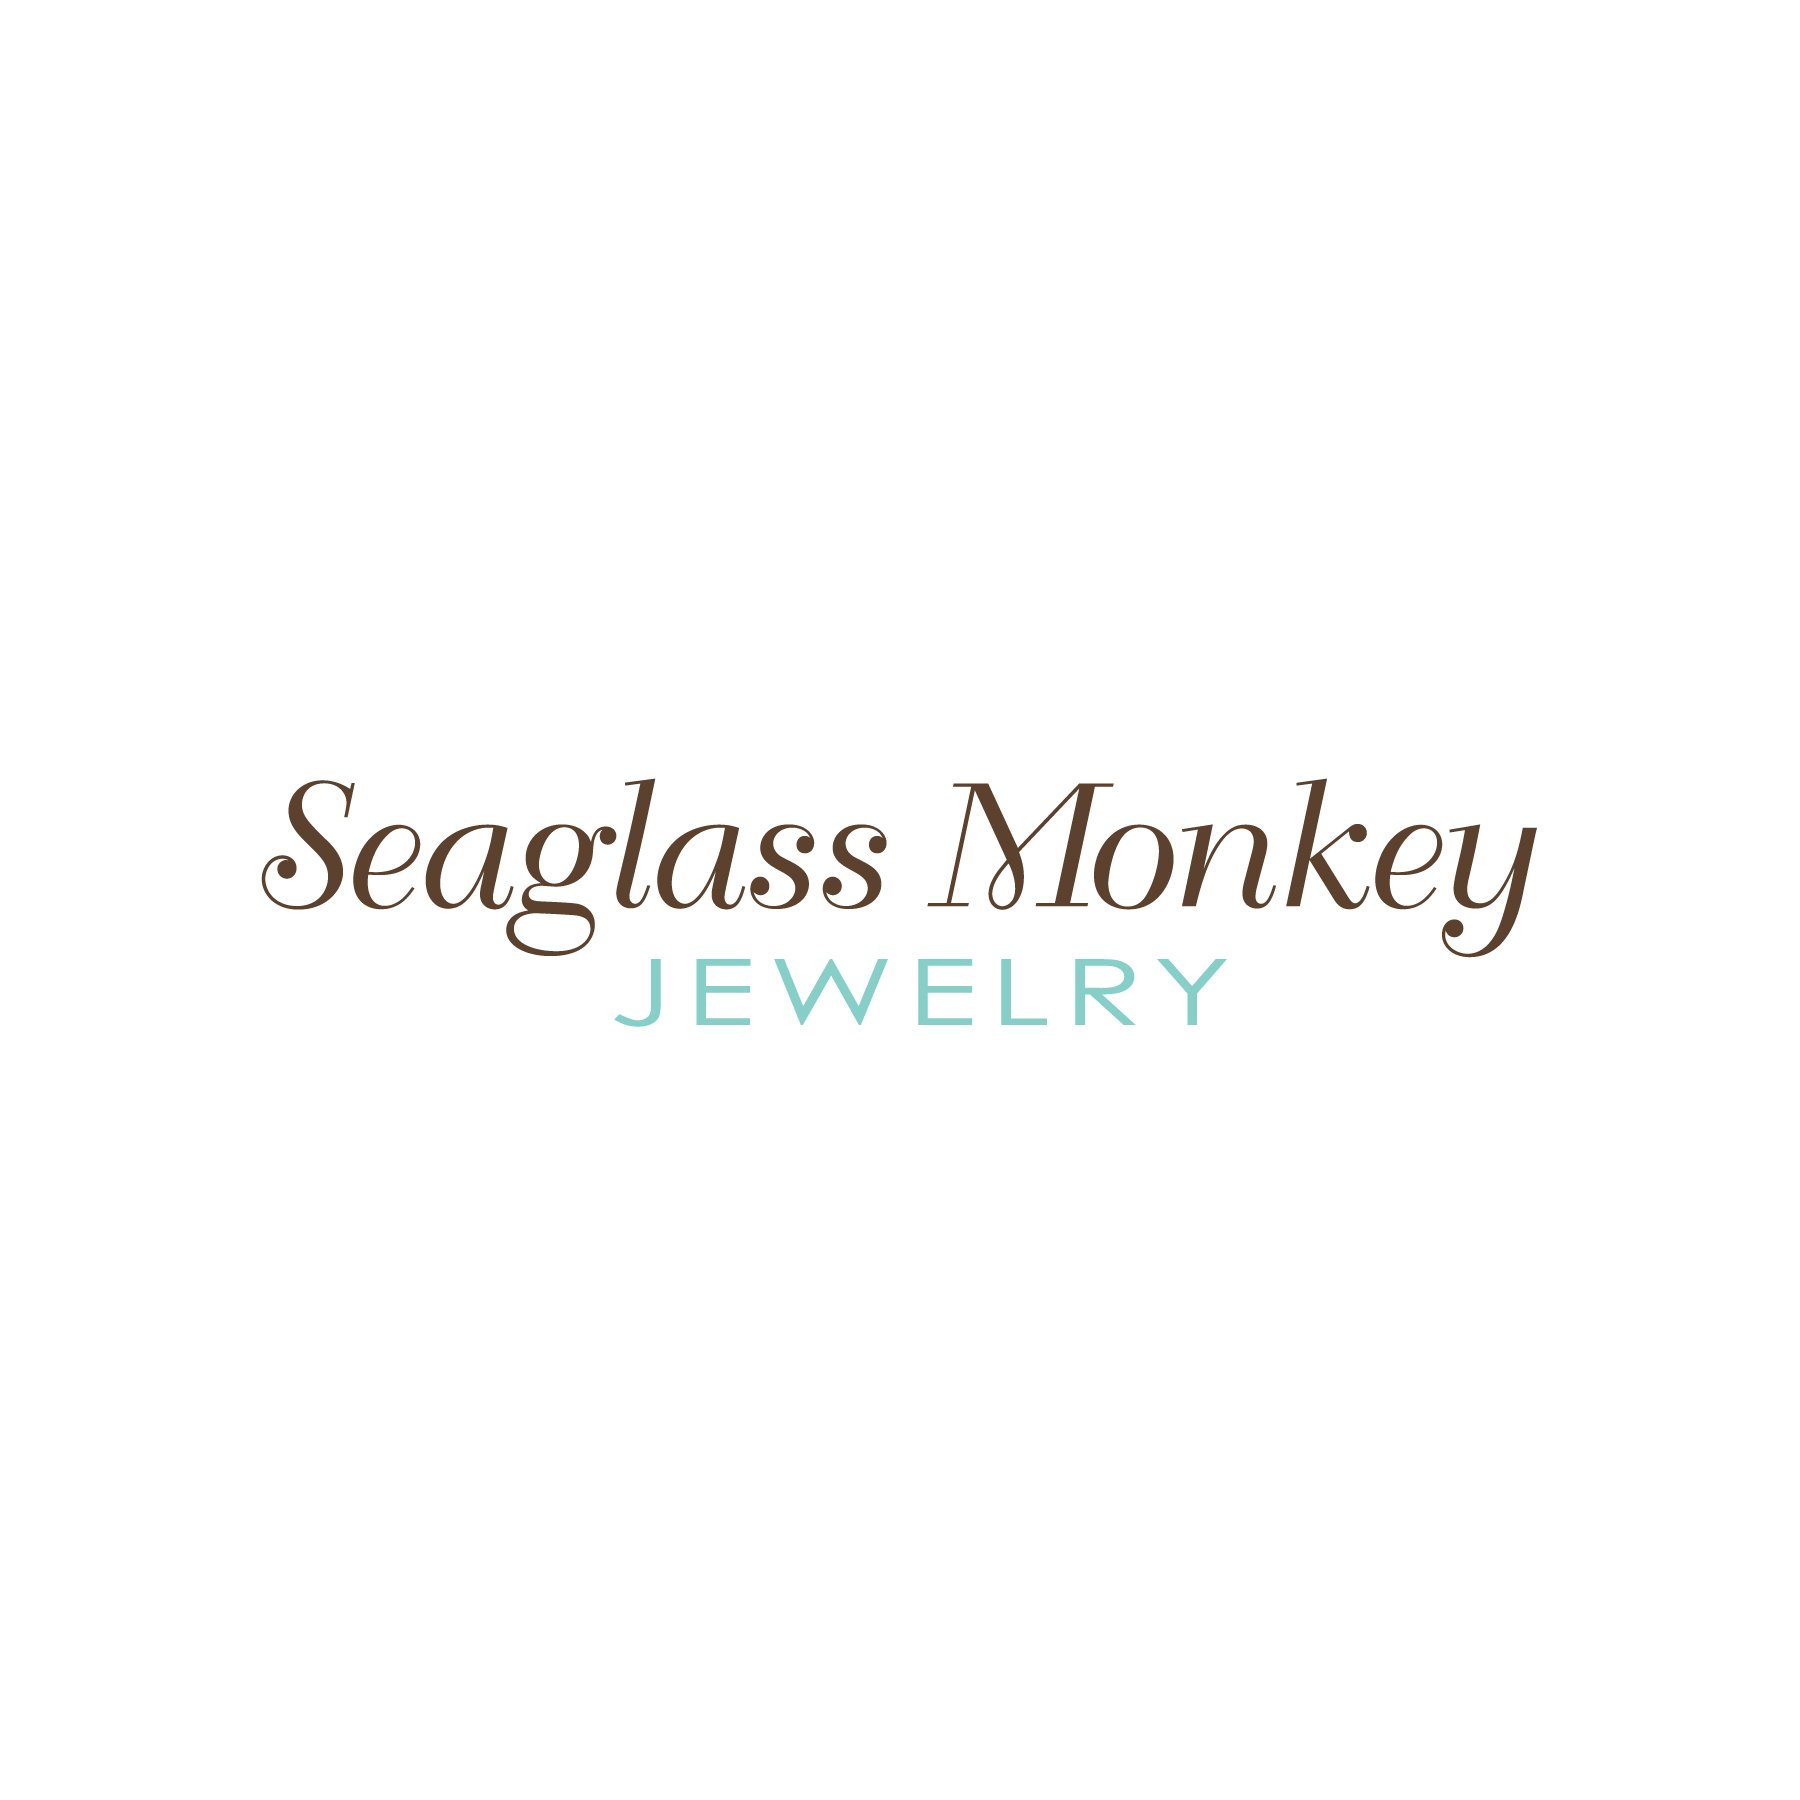 Portfolio_Logos_Seaglass Monkey.jpg